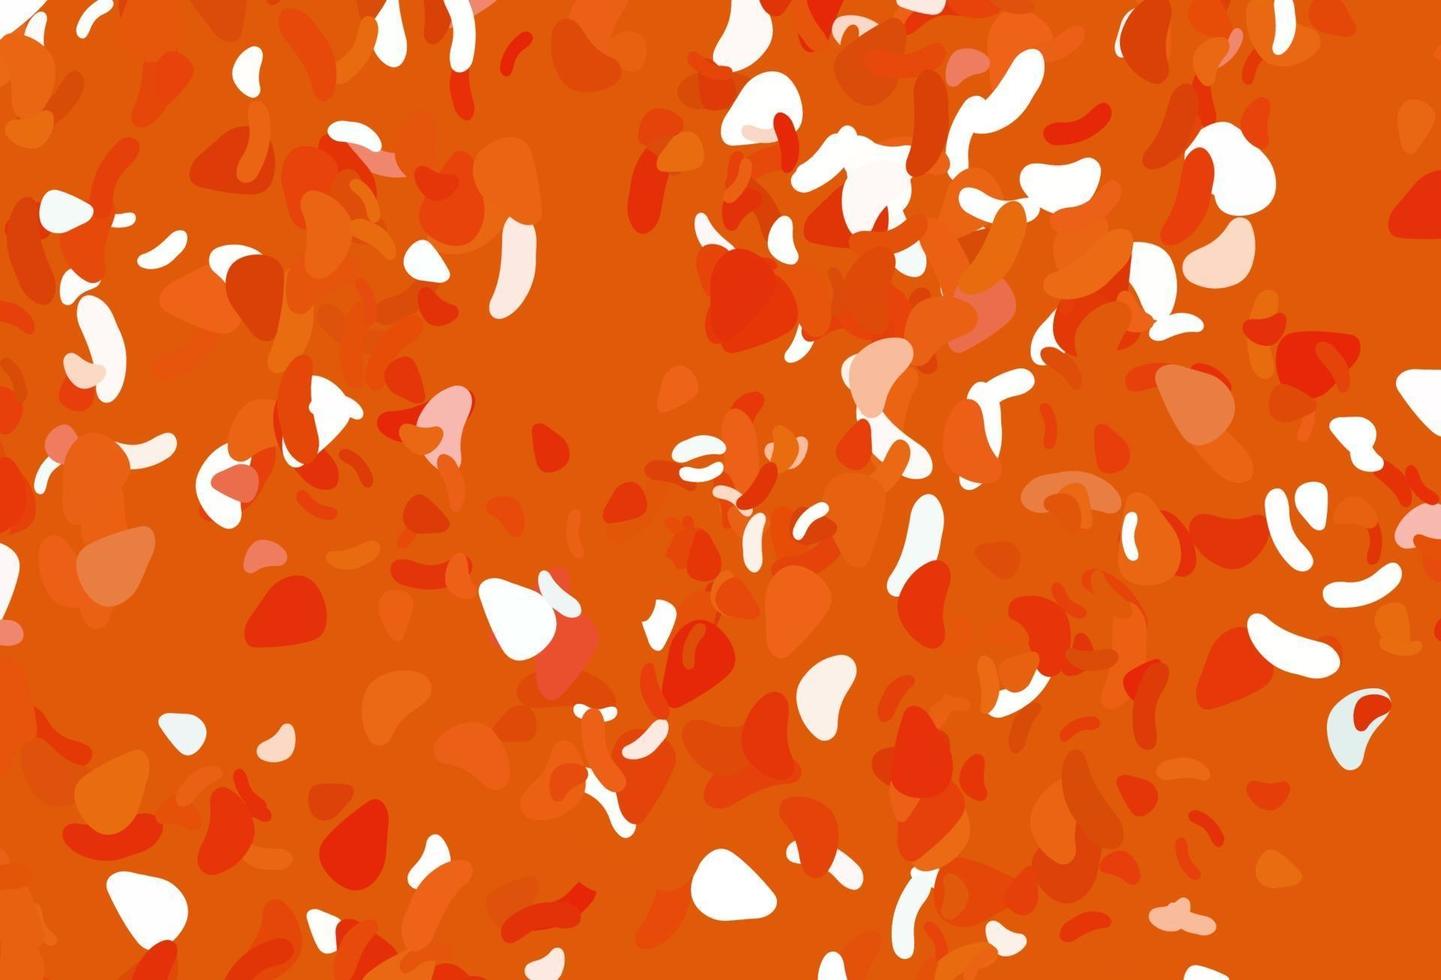 ljus orange vektor mall med memphis former.